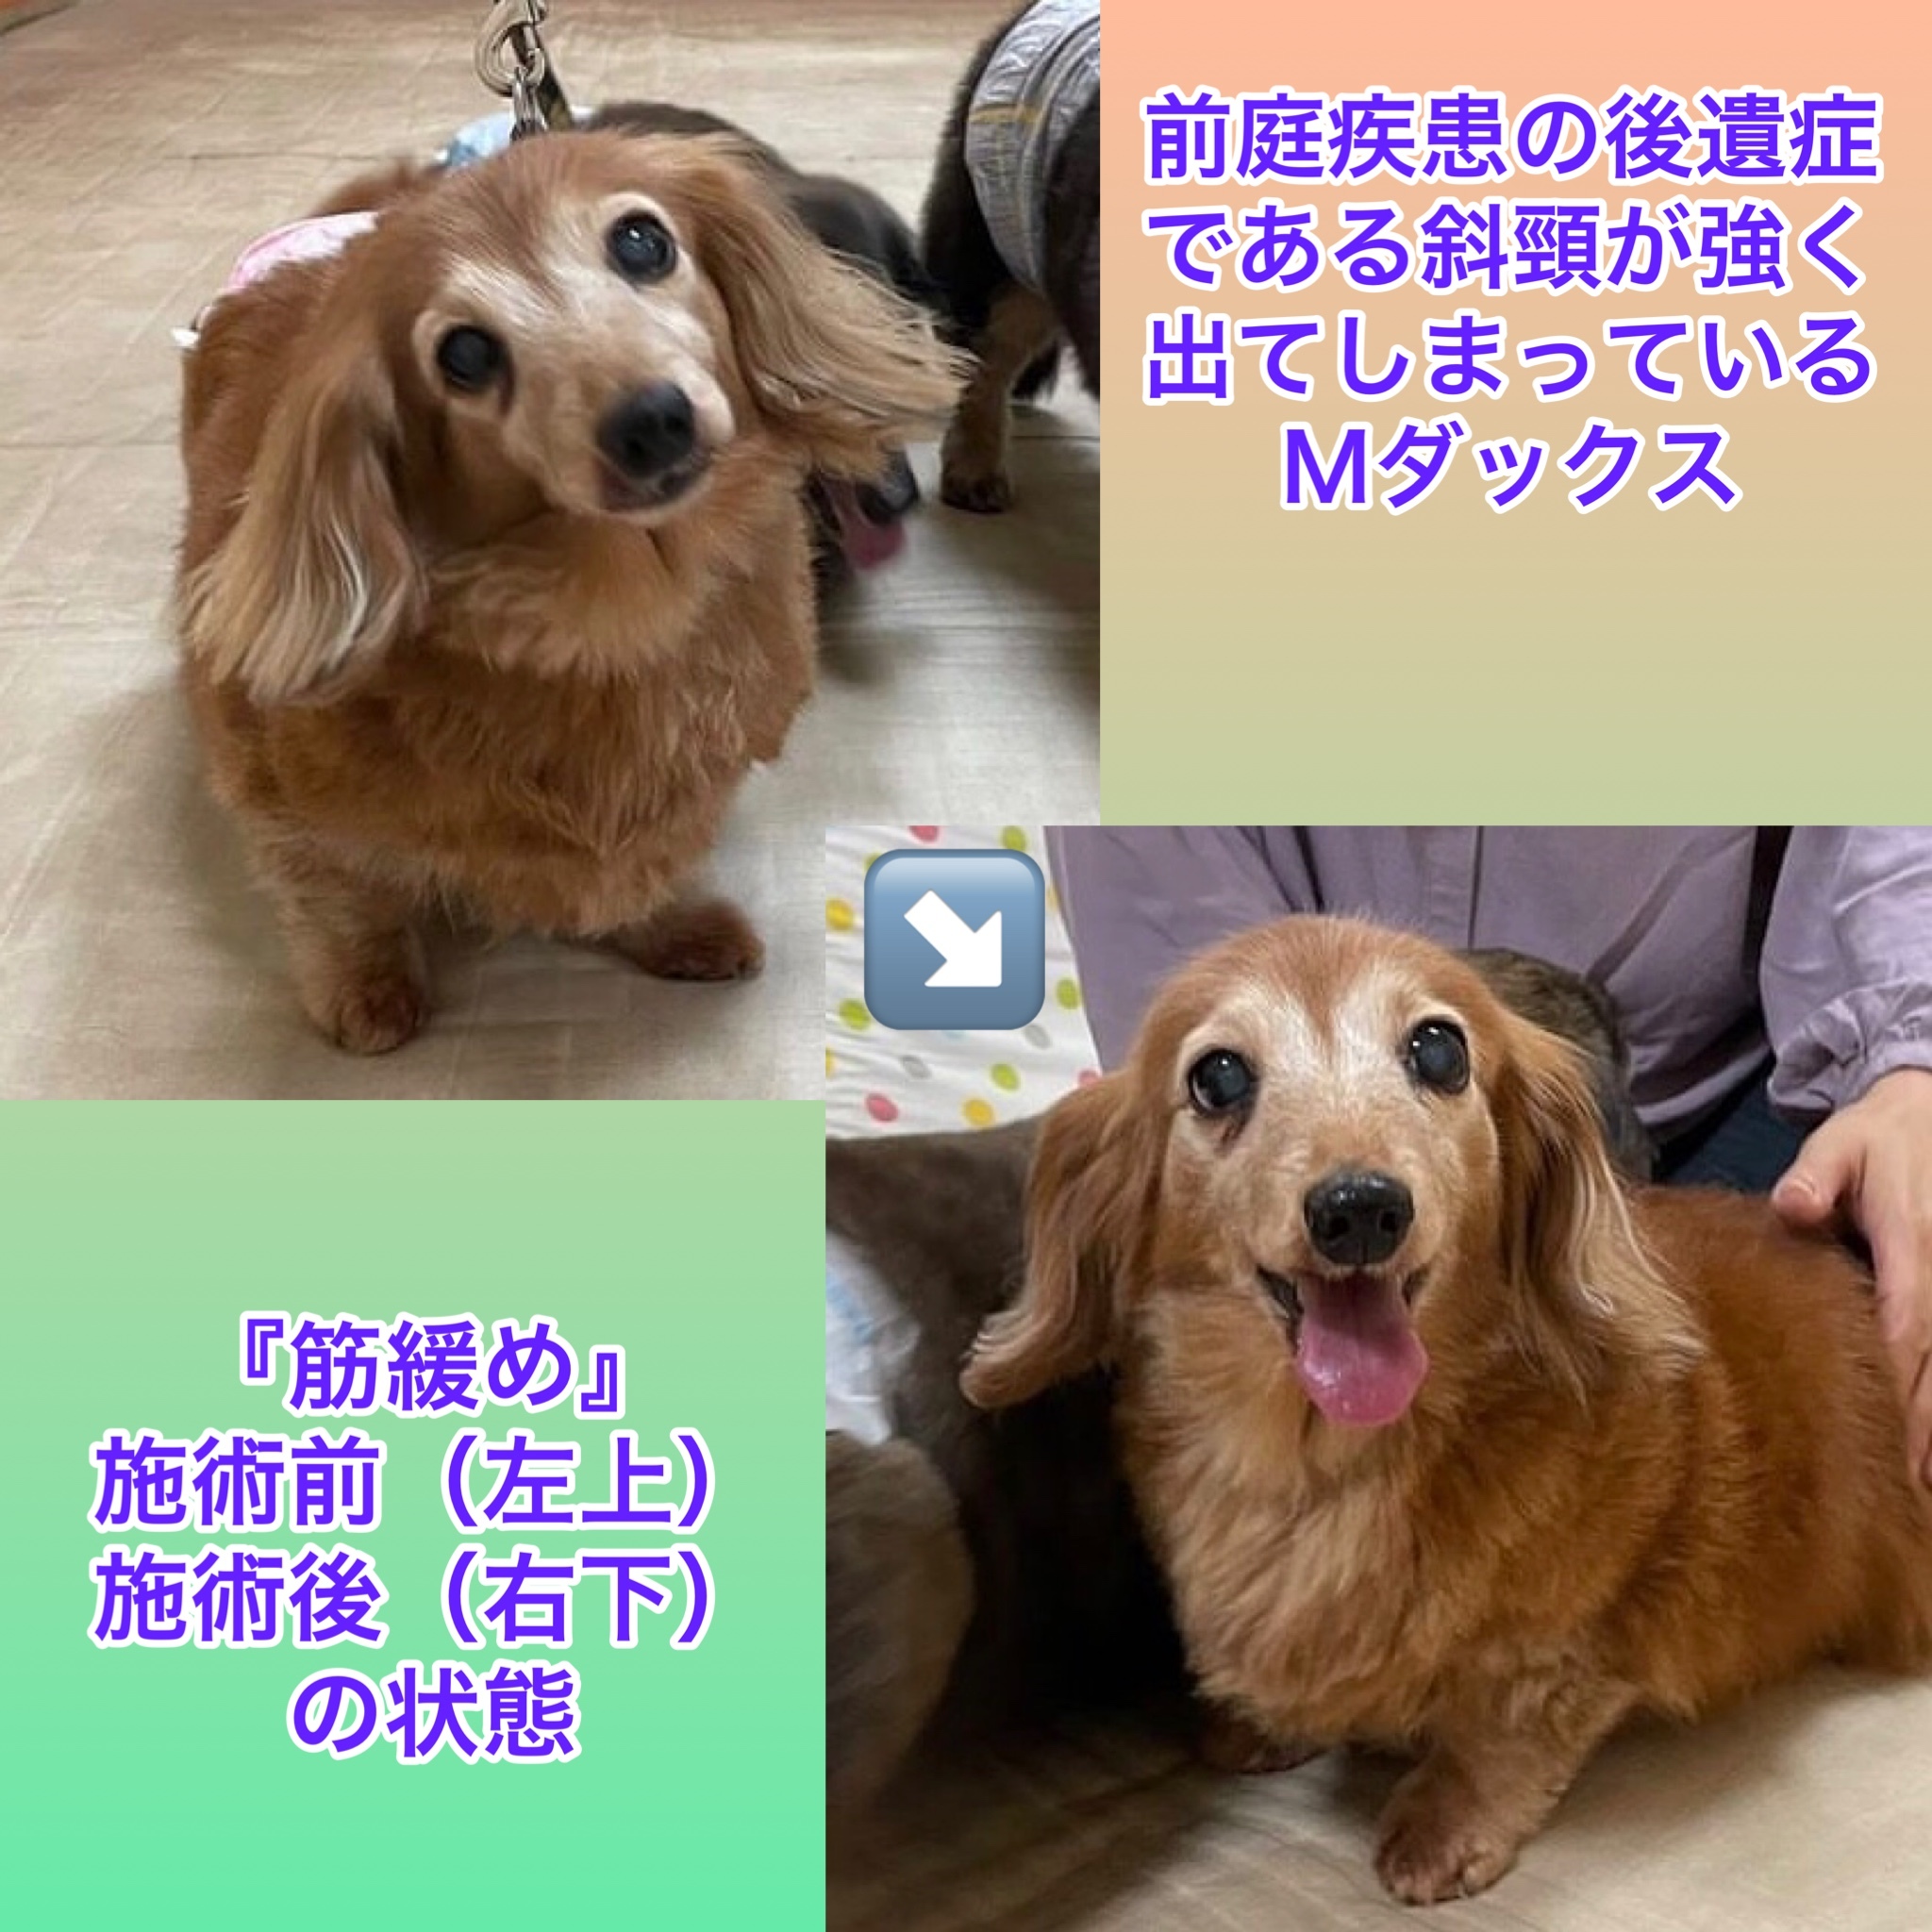 犬の整体マッサージ教室に参加された愛犬さんの施術効果